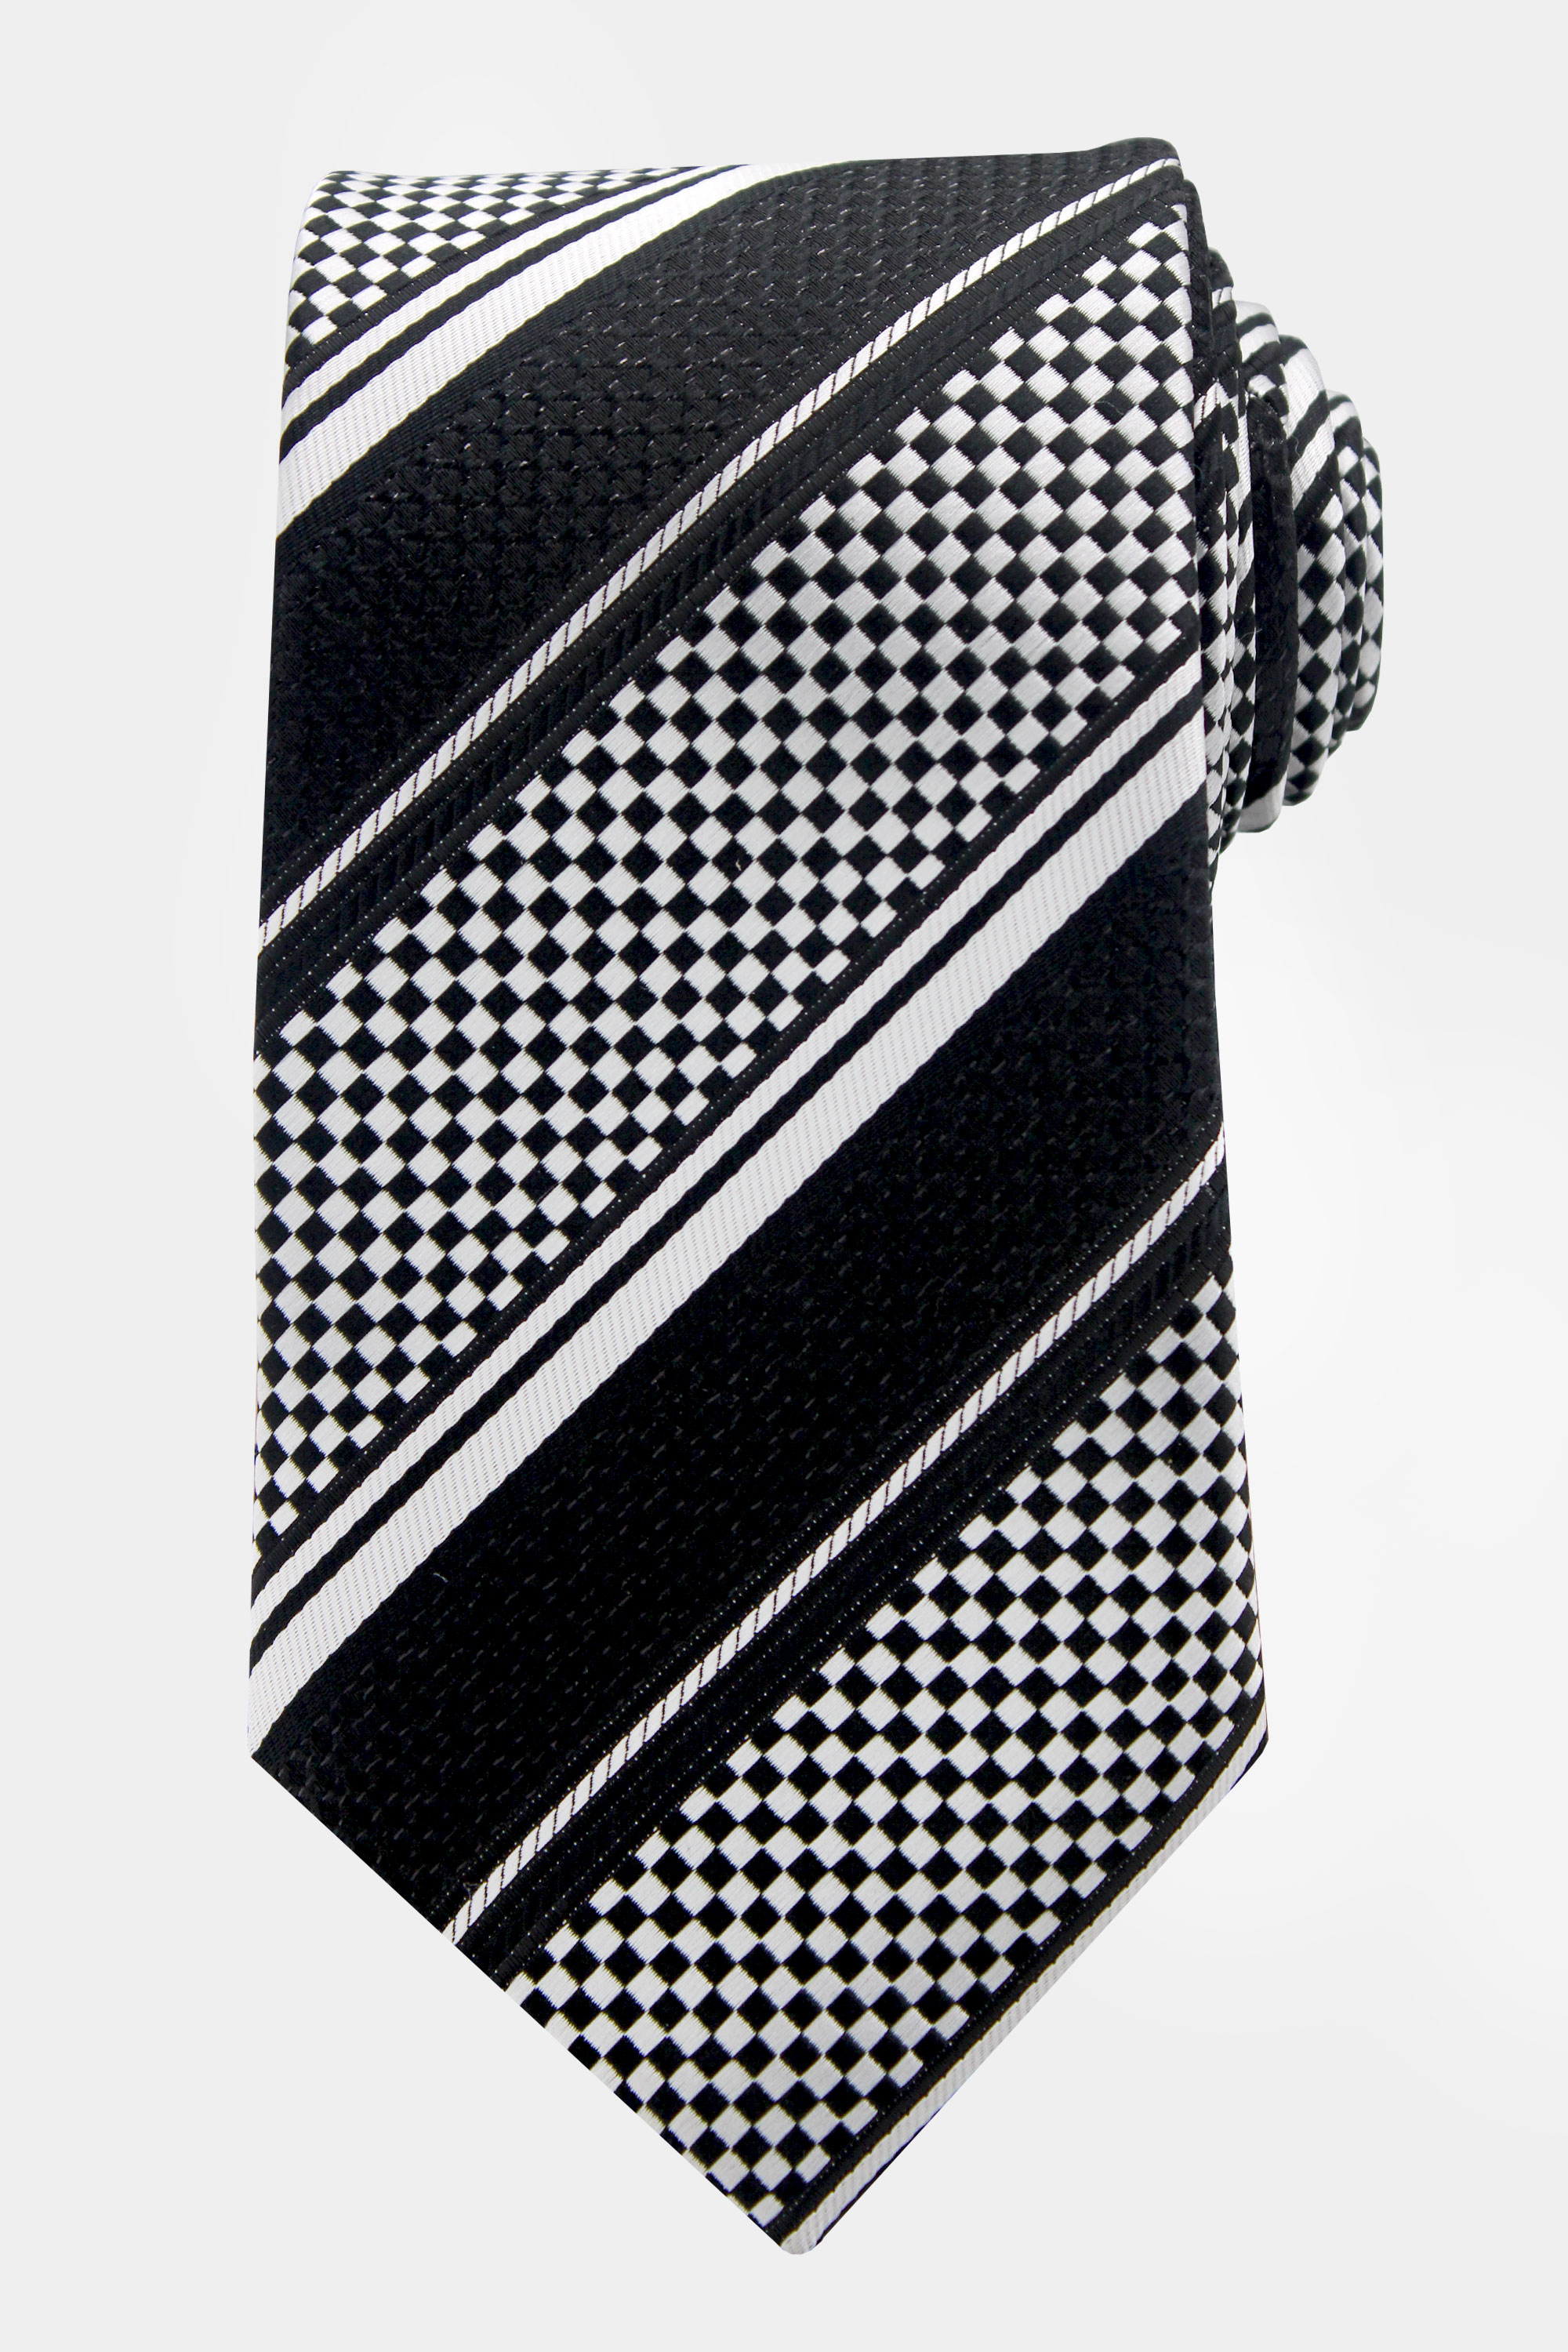 White-and-Black-Striped-Tie-from-Gentlemansguru.com